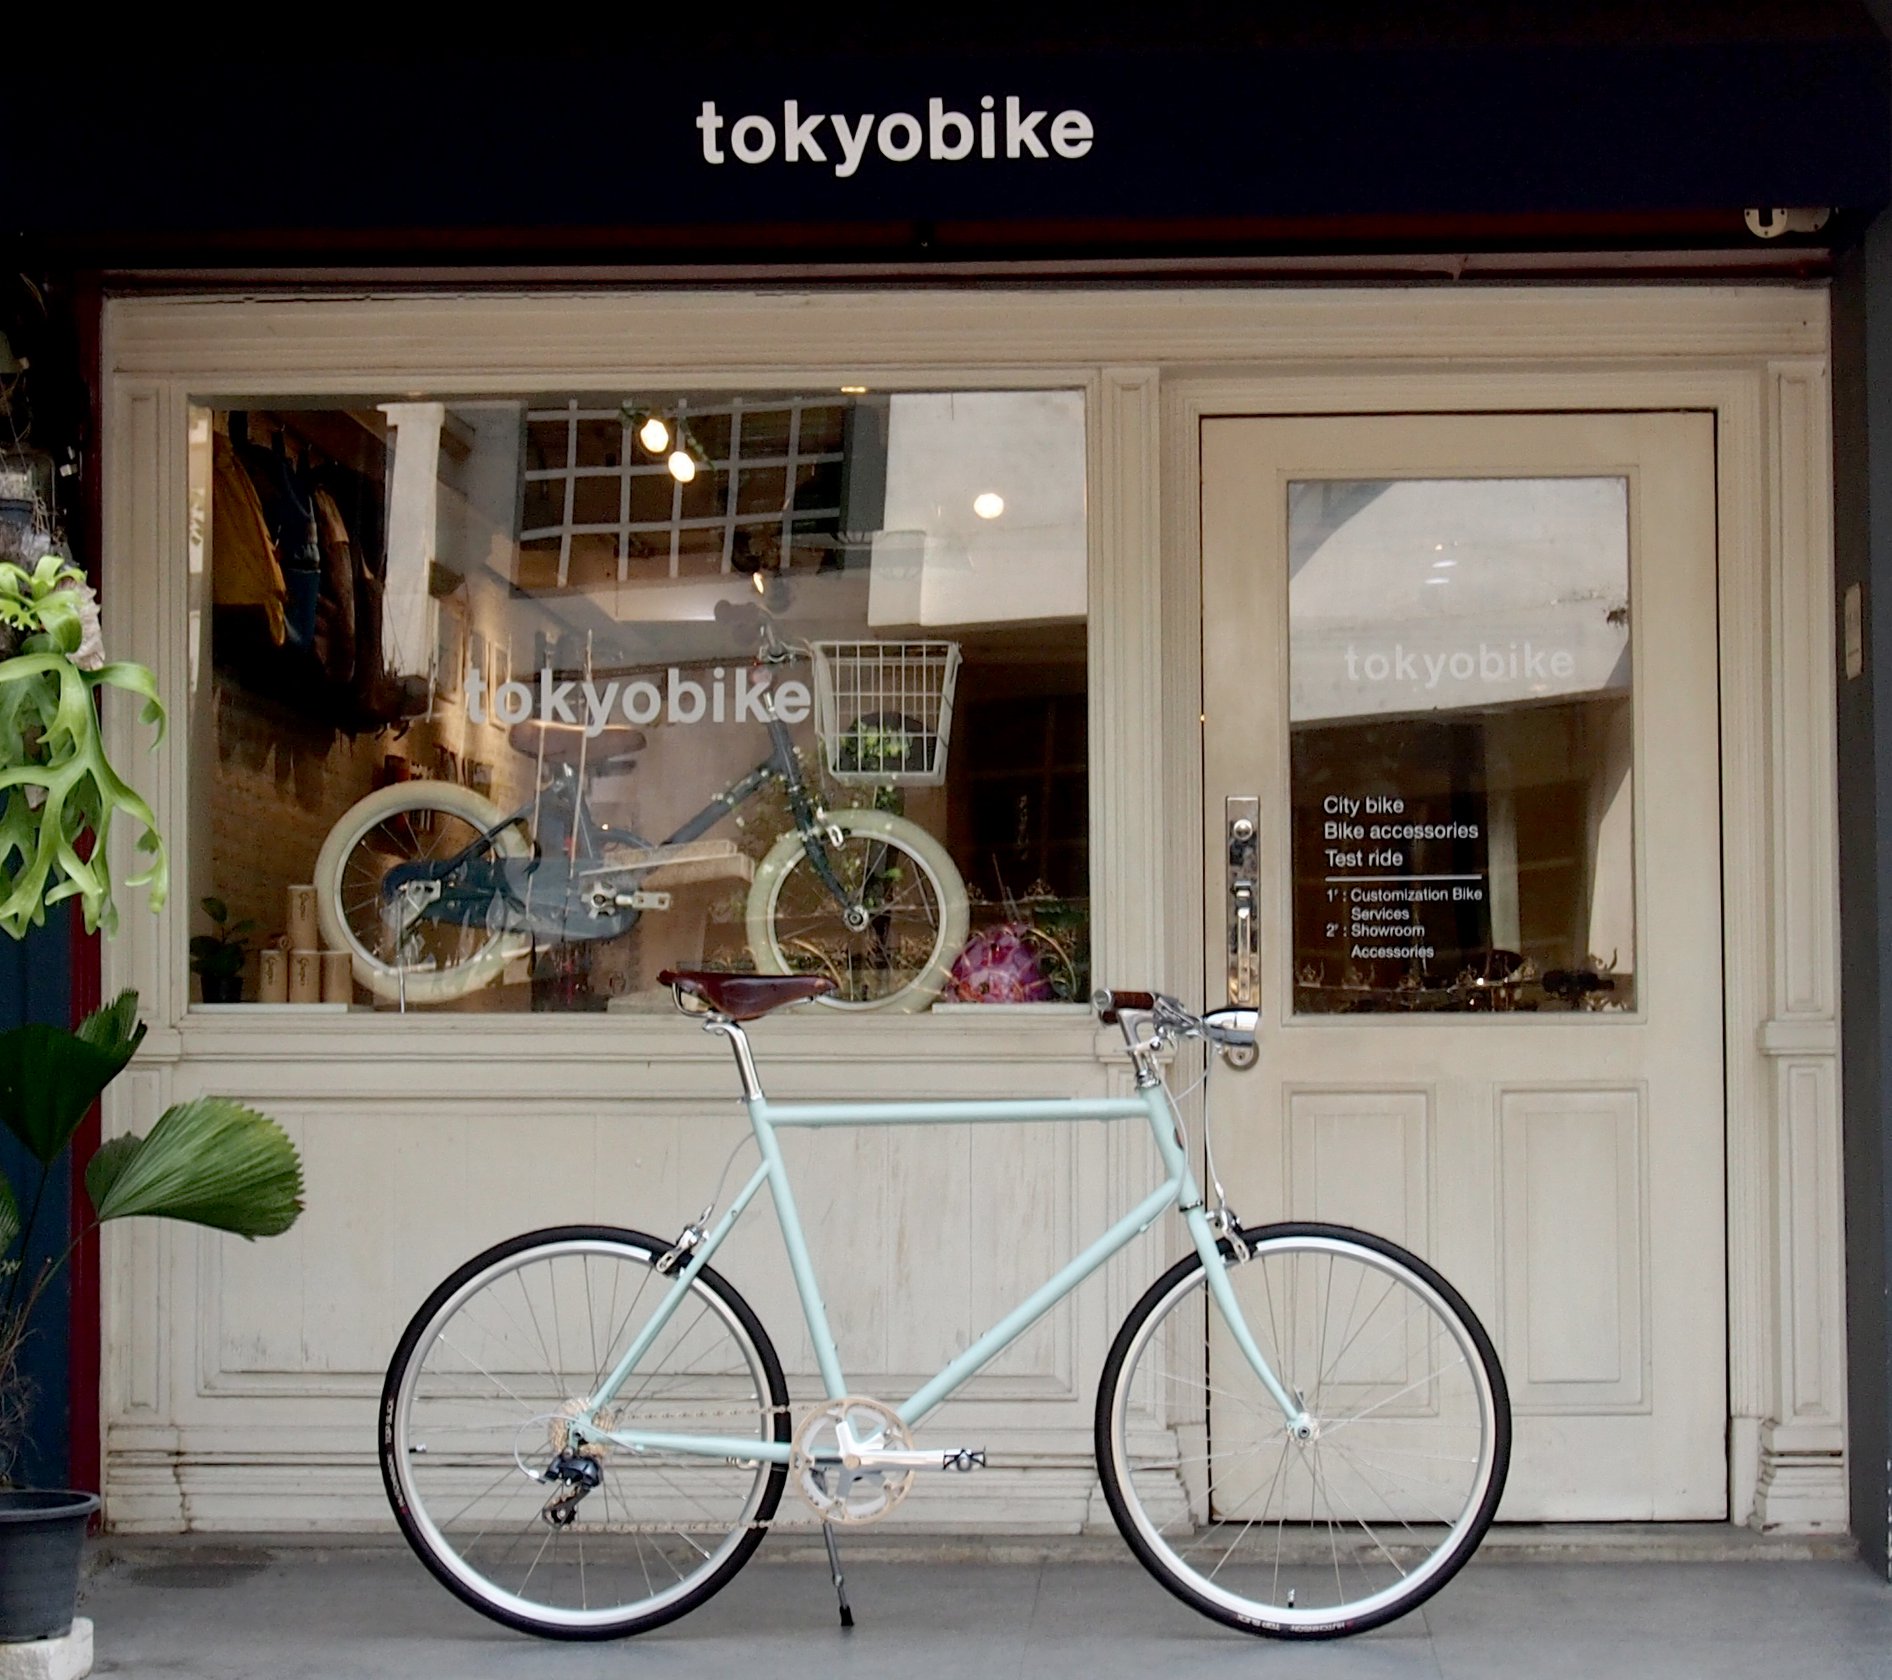 จักรยาน โตเกียวไบค์ tokyobike plus แต่งเบาะหนัง brooks สีน้ำตาล ตัดกับเฟรมสี mint และติดไฟหน้าจักรยานวินเทจ ที่คอด้านหน้า